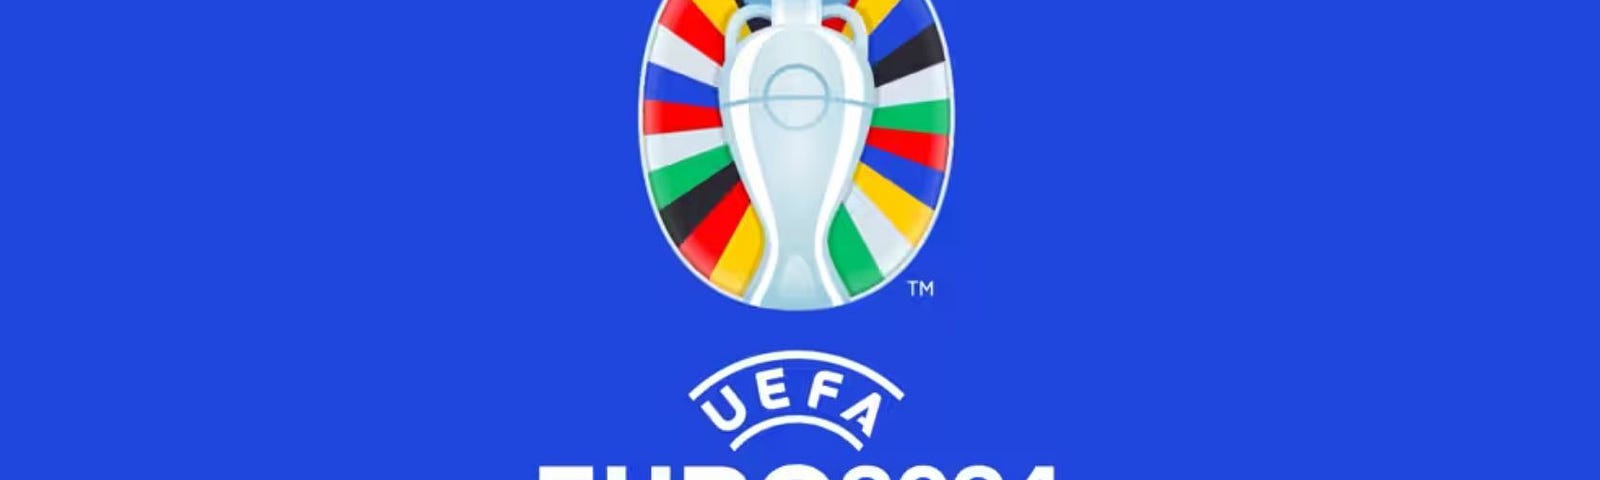 Image of UEFA Germany 2024 logo